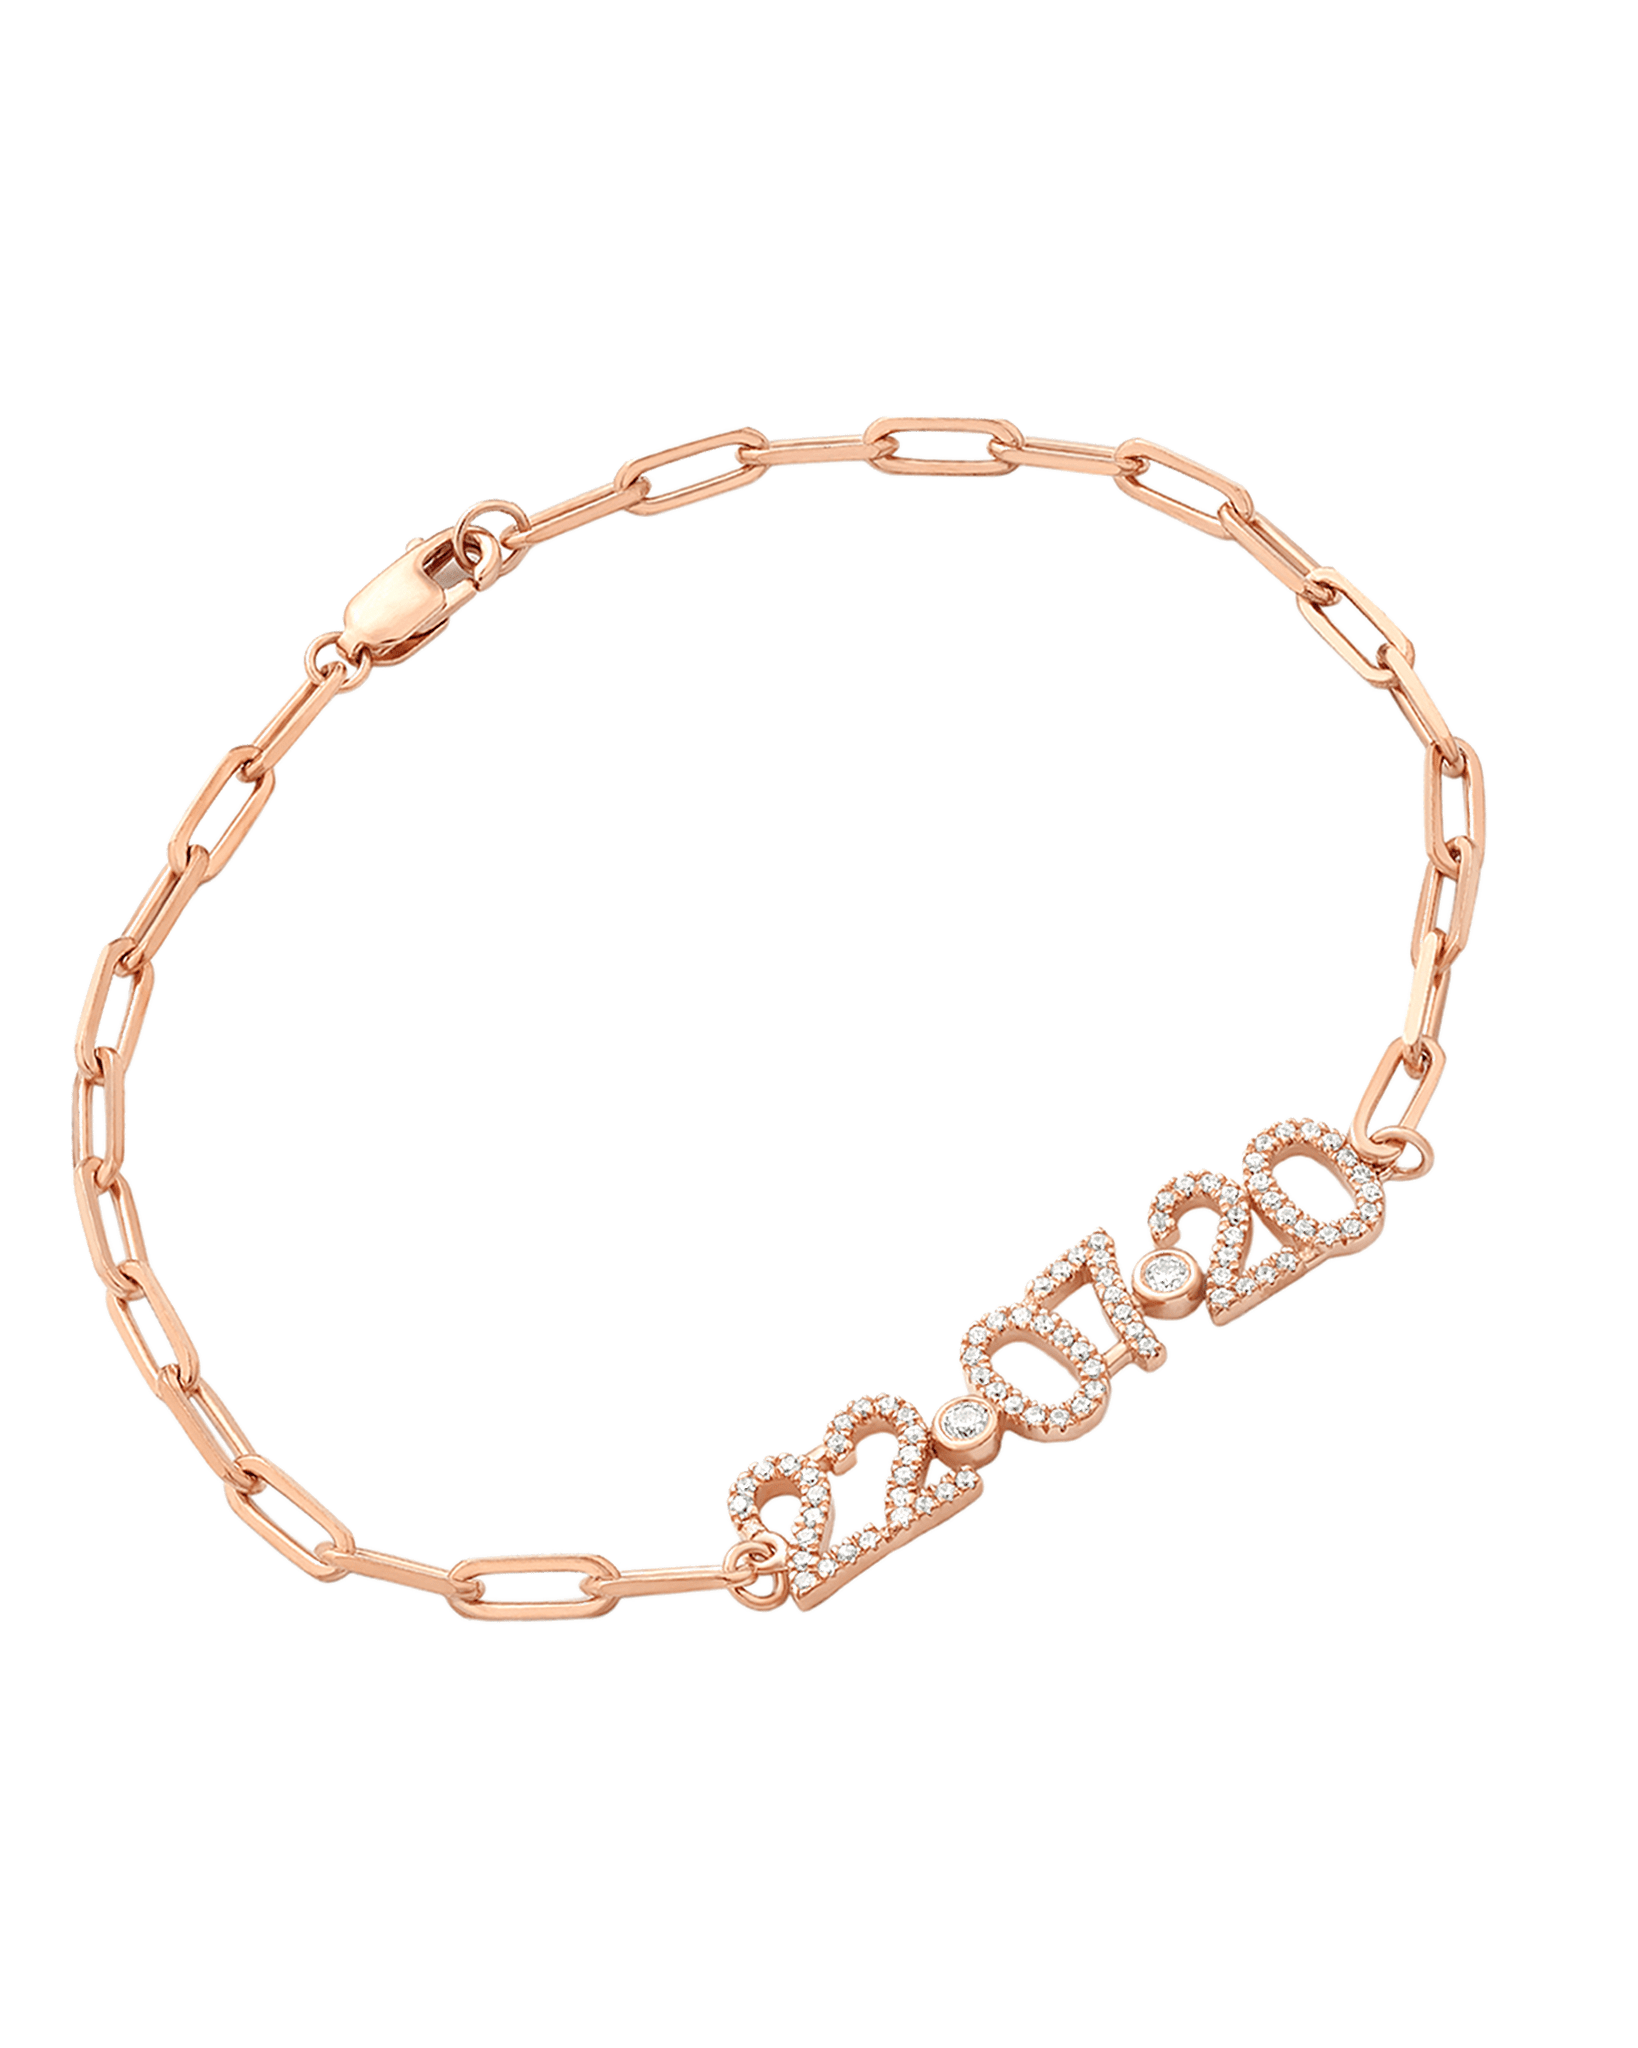 Birthdate Diamond Paved Bracelet - 14K Rose Gold Bracelets magal-dev 6" 